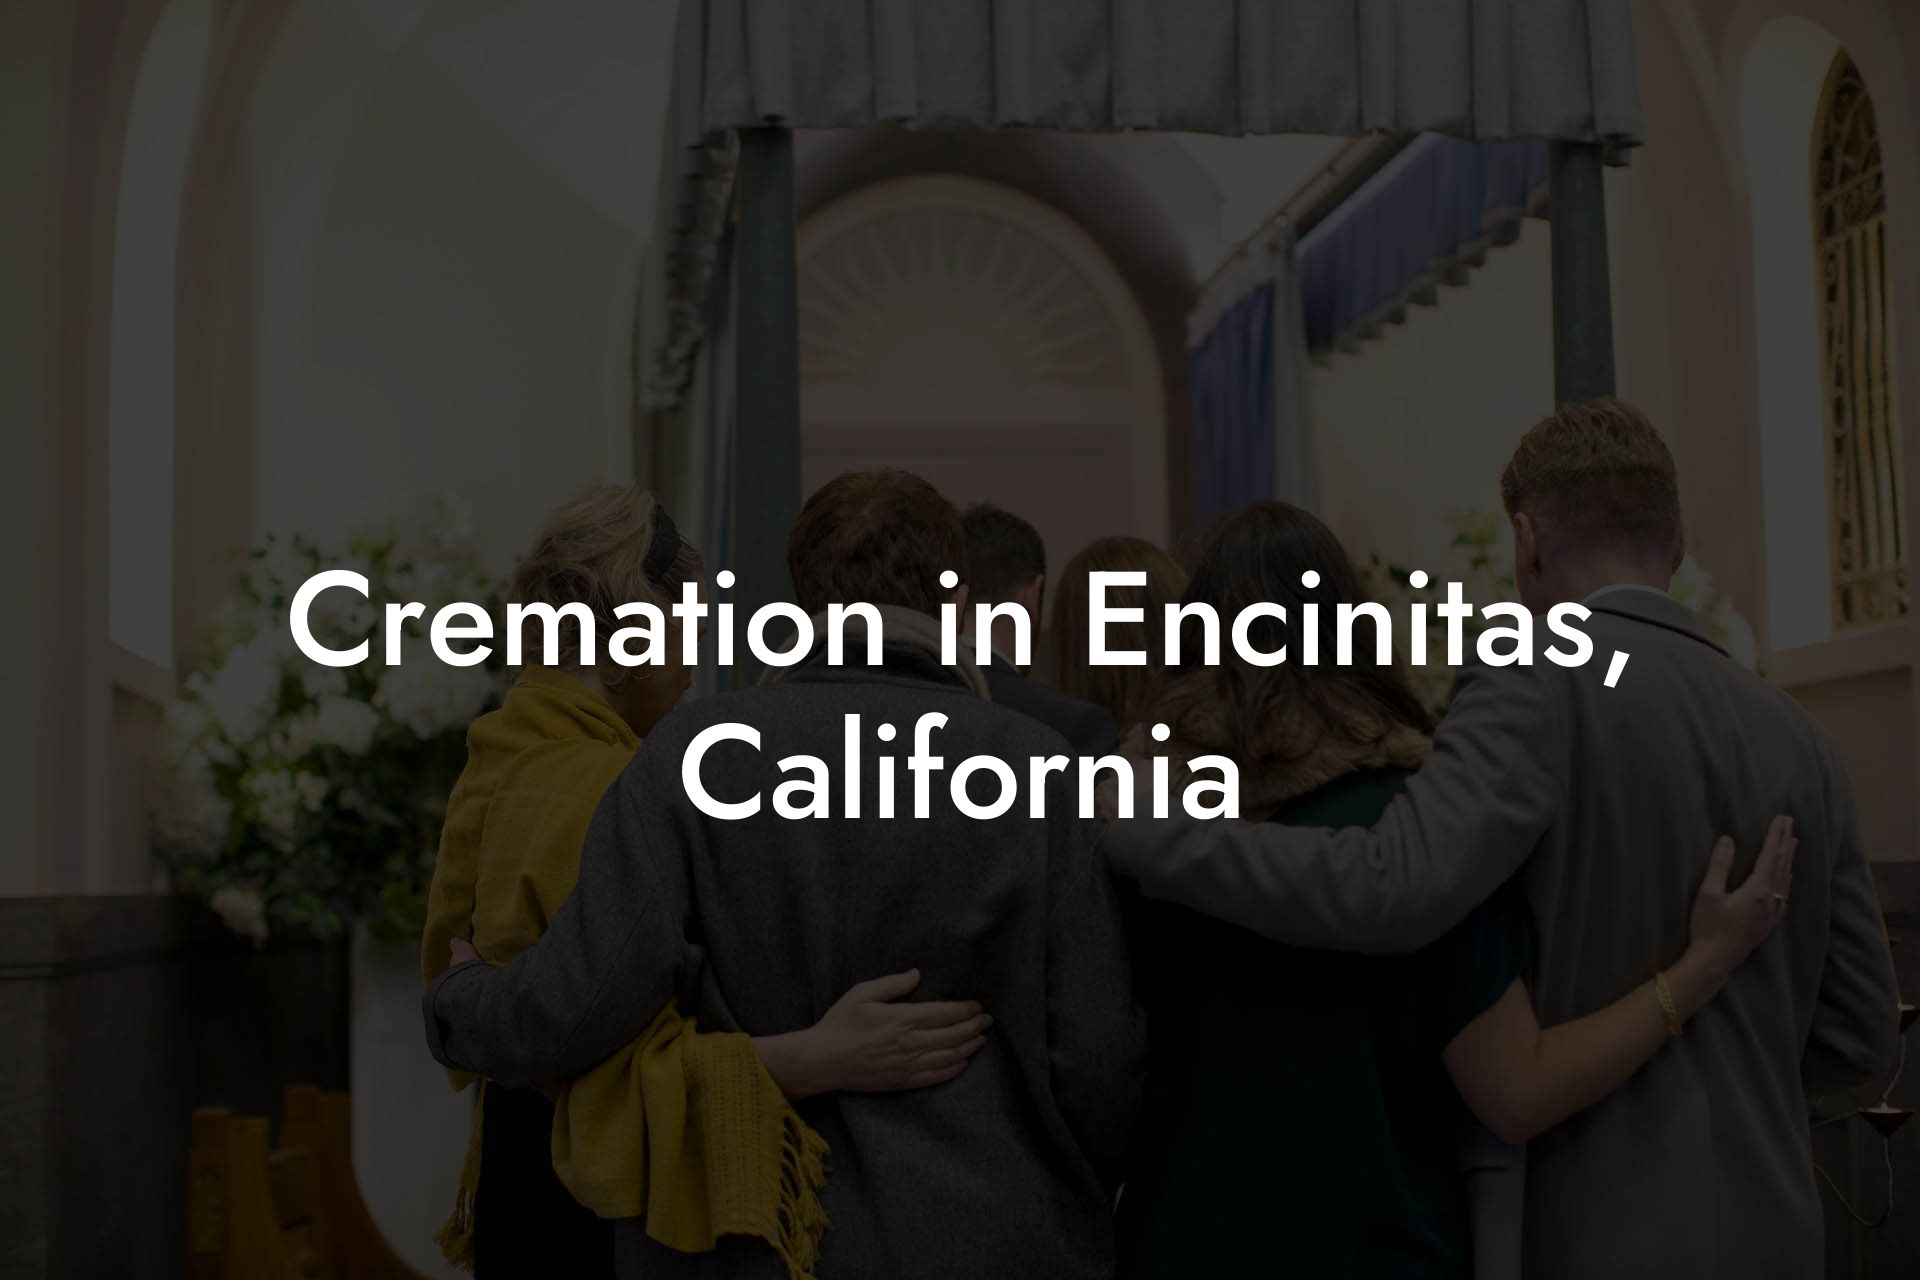 Cremation in Encinitas, California